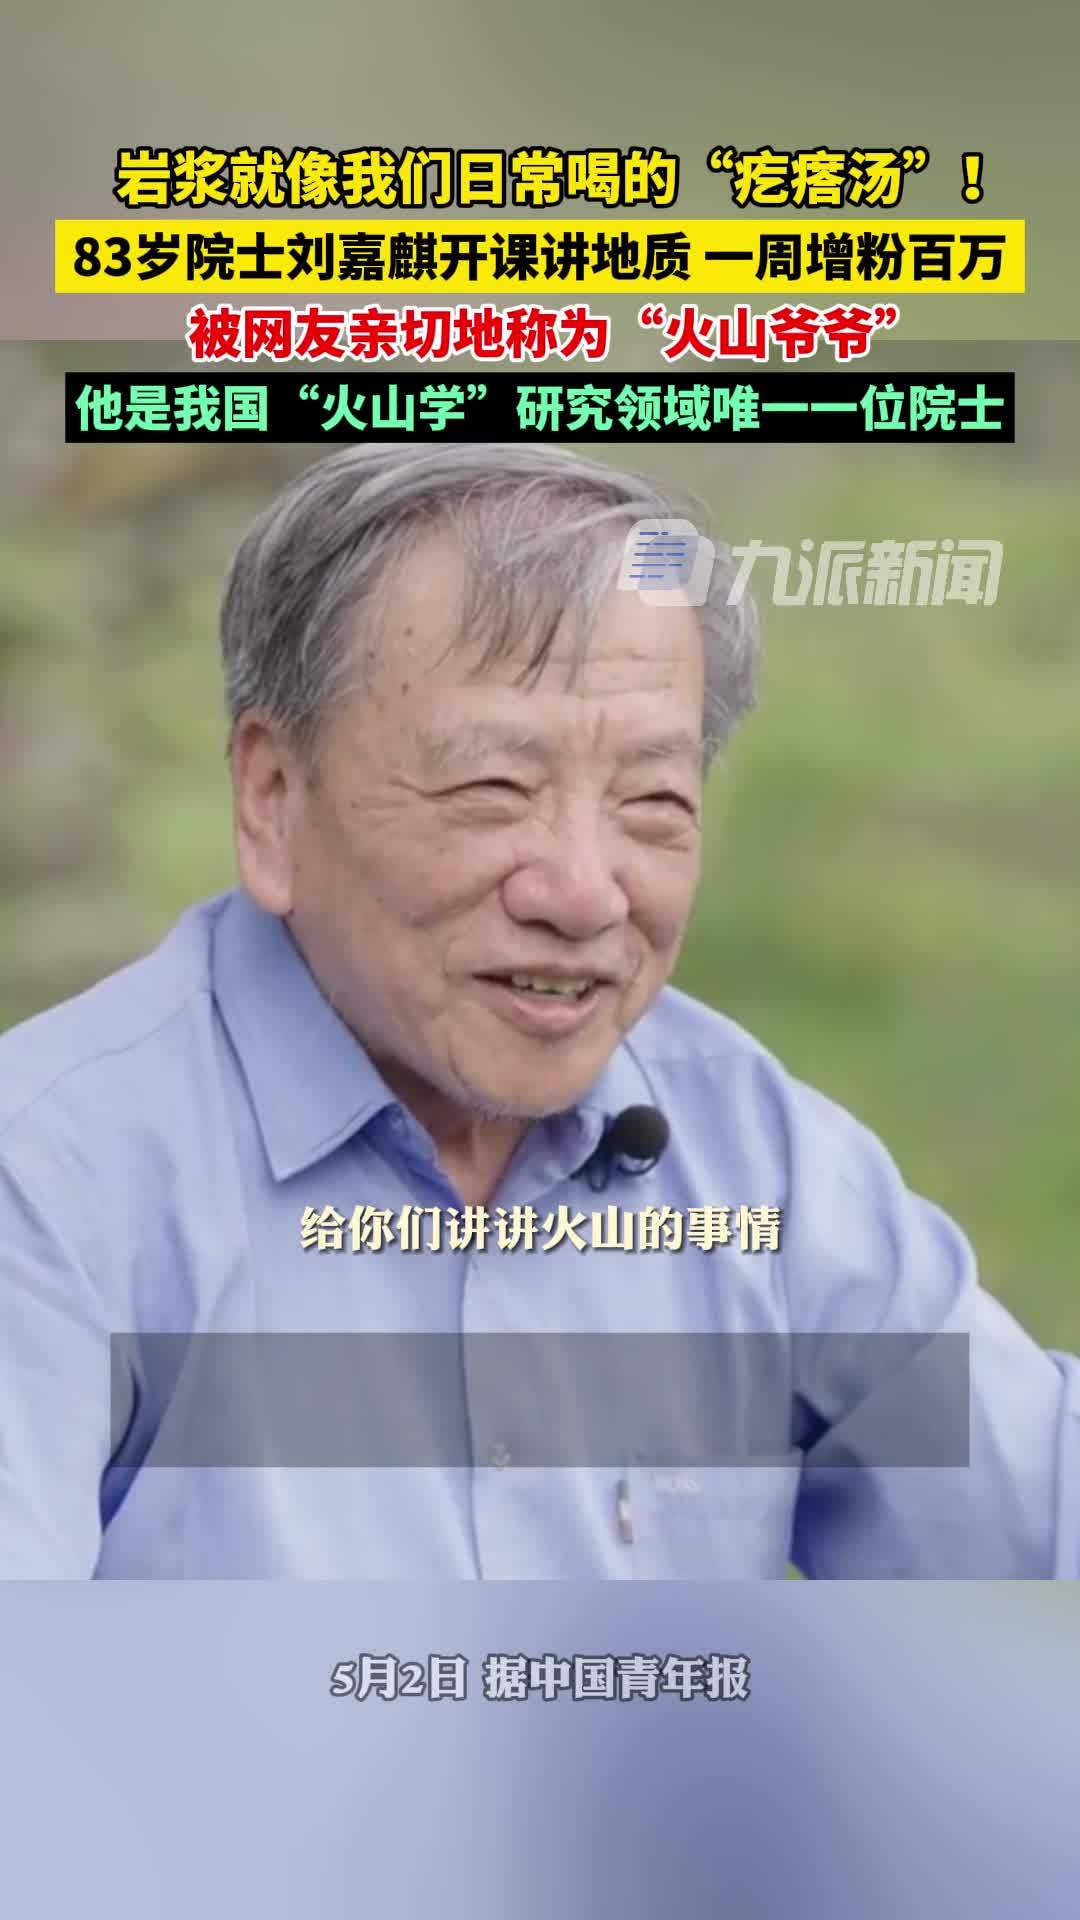 83岁院士刘嘉麒开课讲地质一周增粉百万，被网友亲切地称为“火山爷爷”